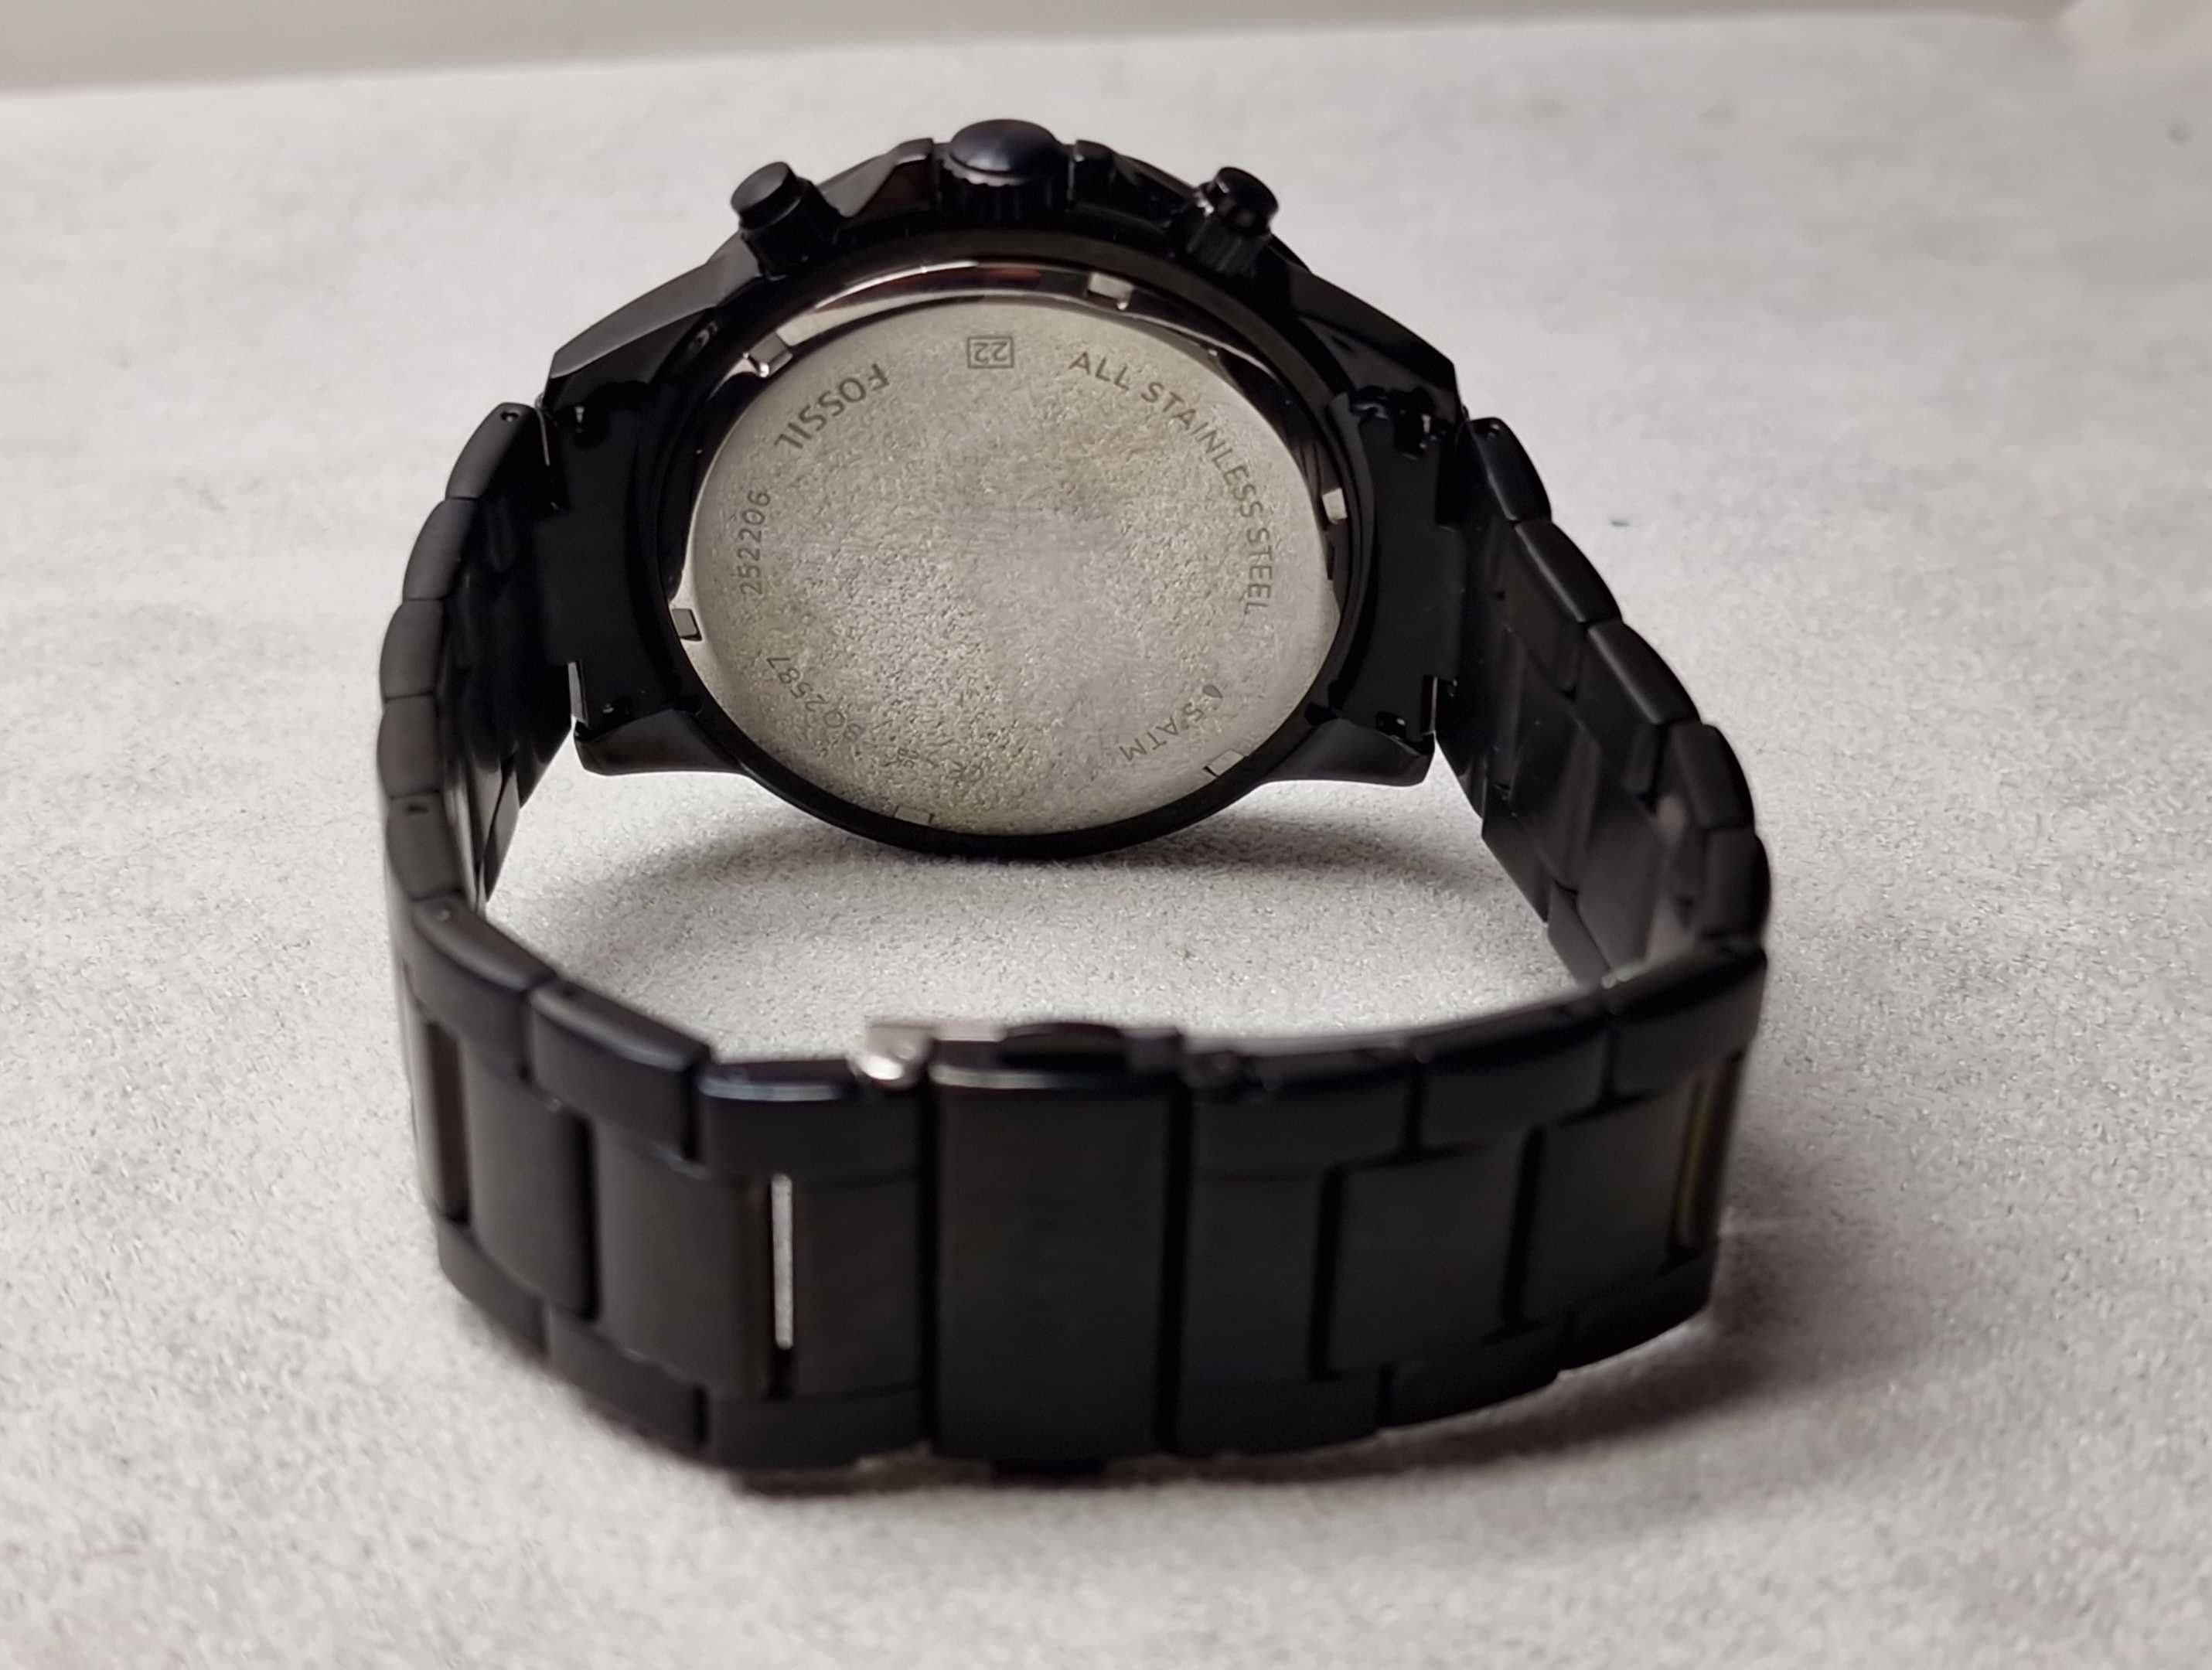 Fossil zegarek męski Bq2587 + pudełko